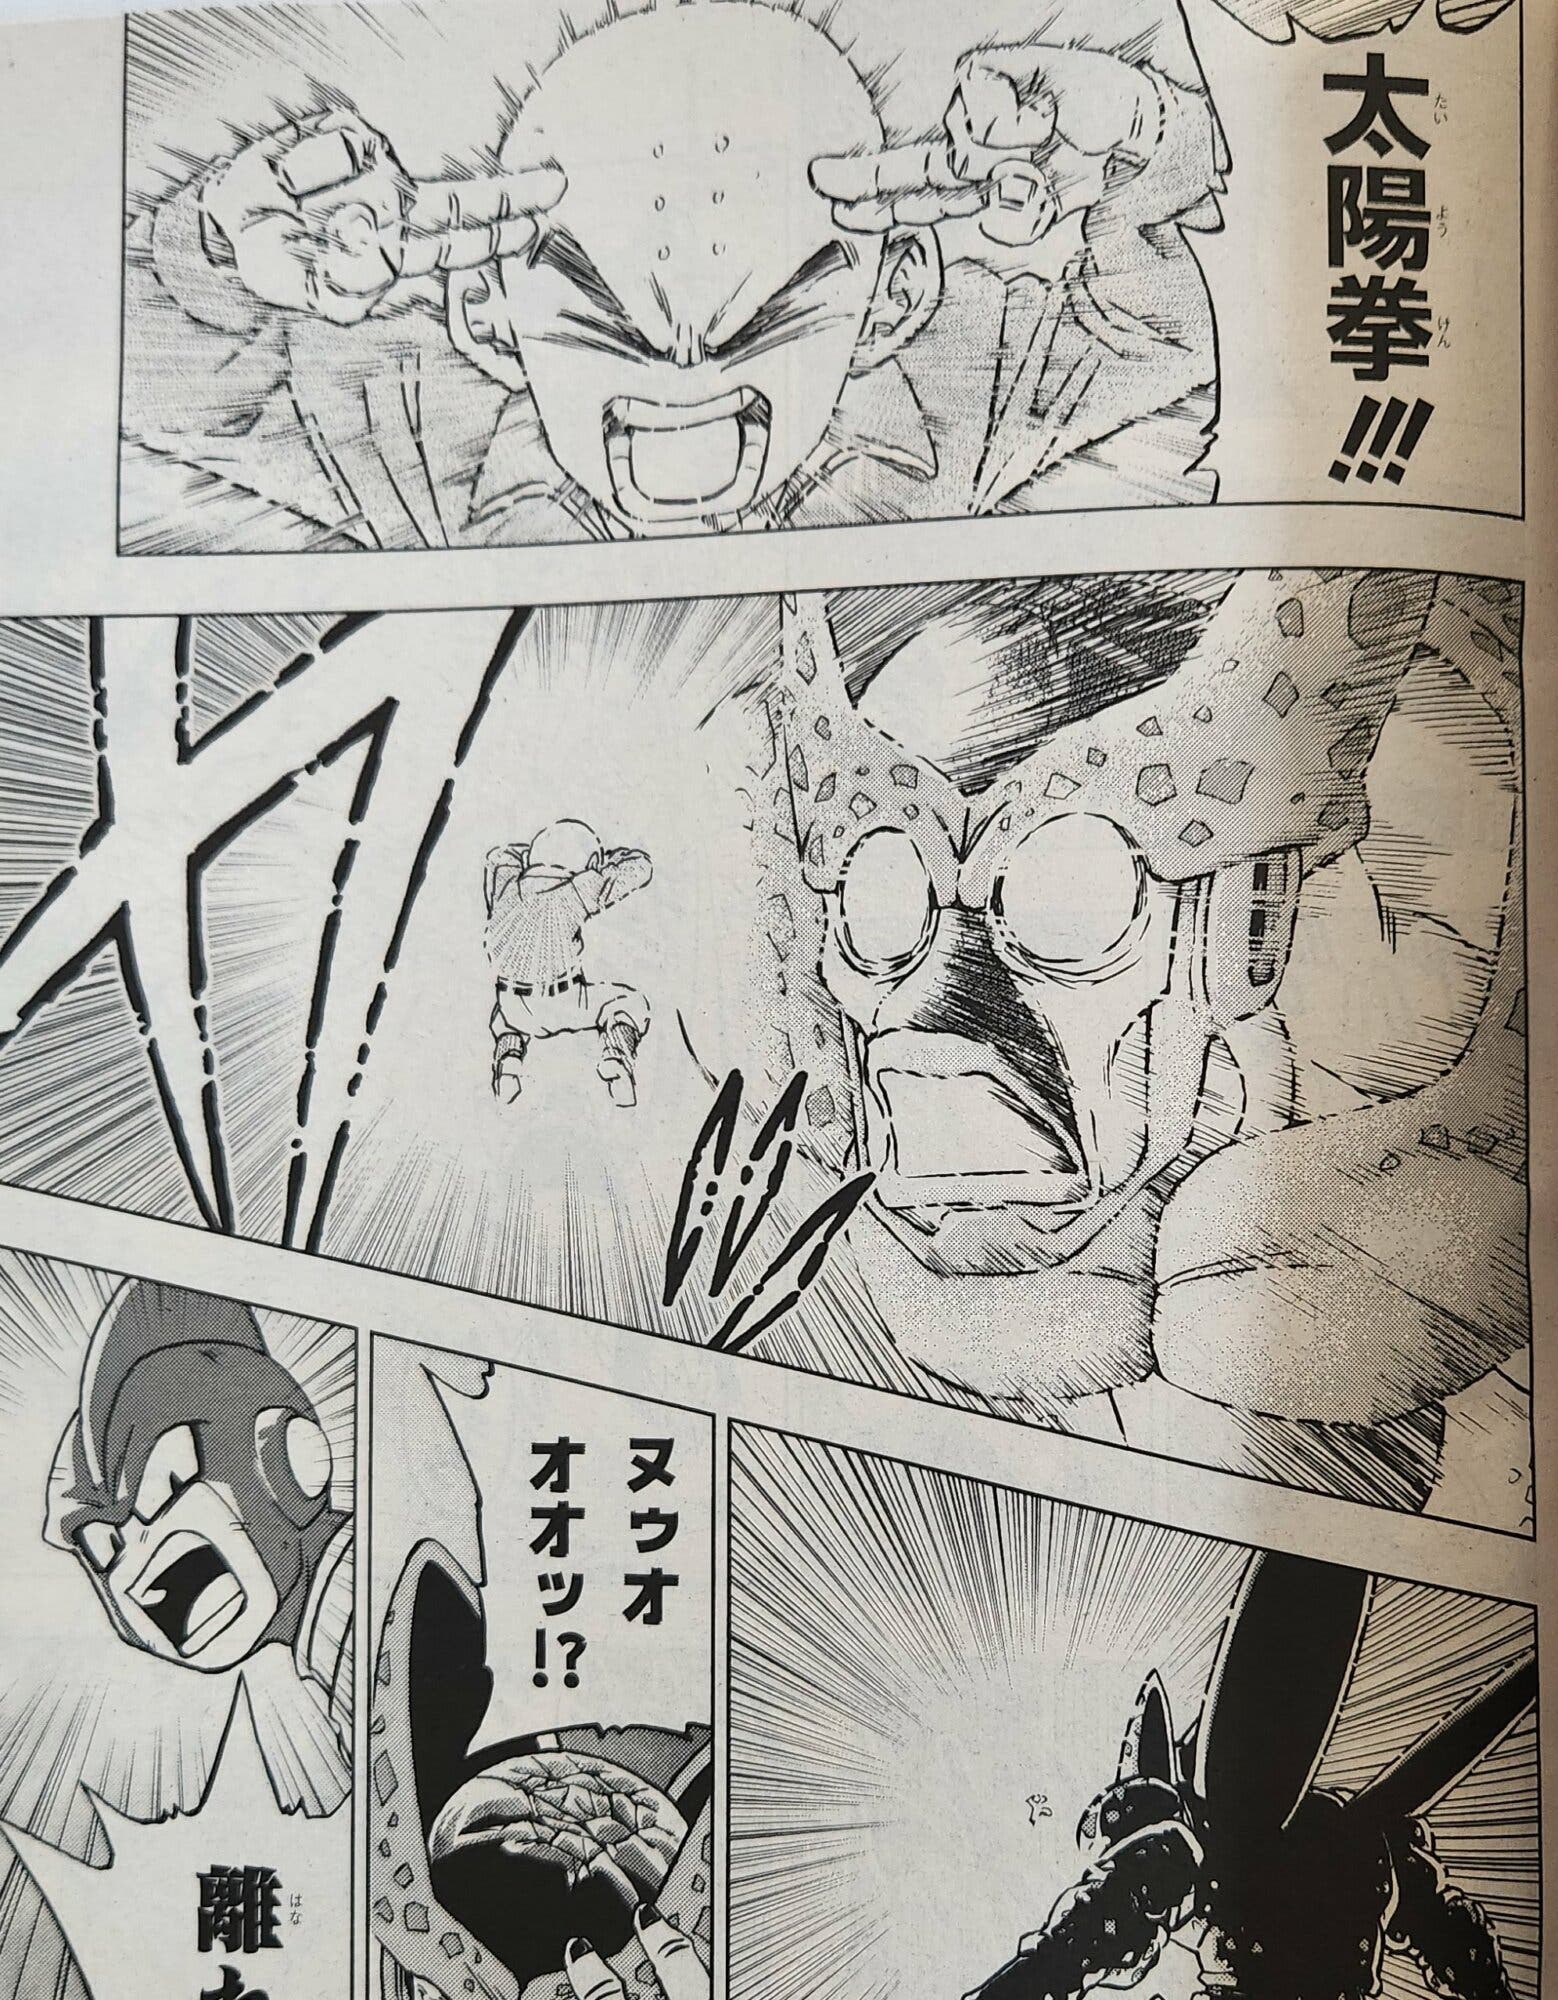 El capítulo 98 del manga de Dragon Ball Super nos revela a Pan en